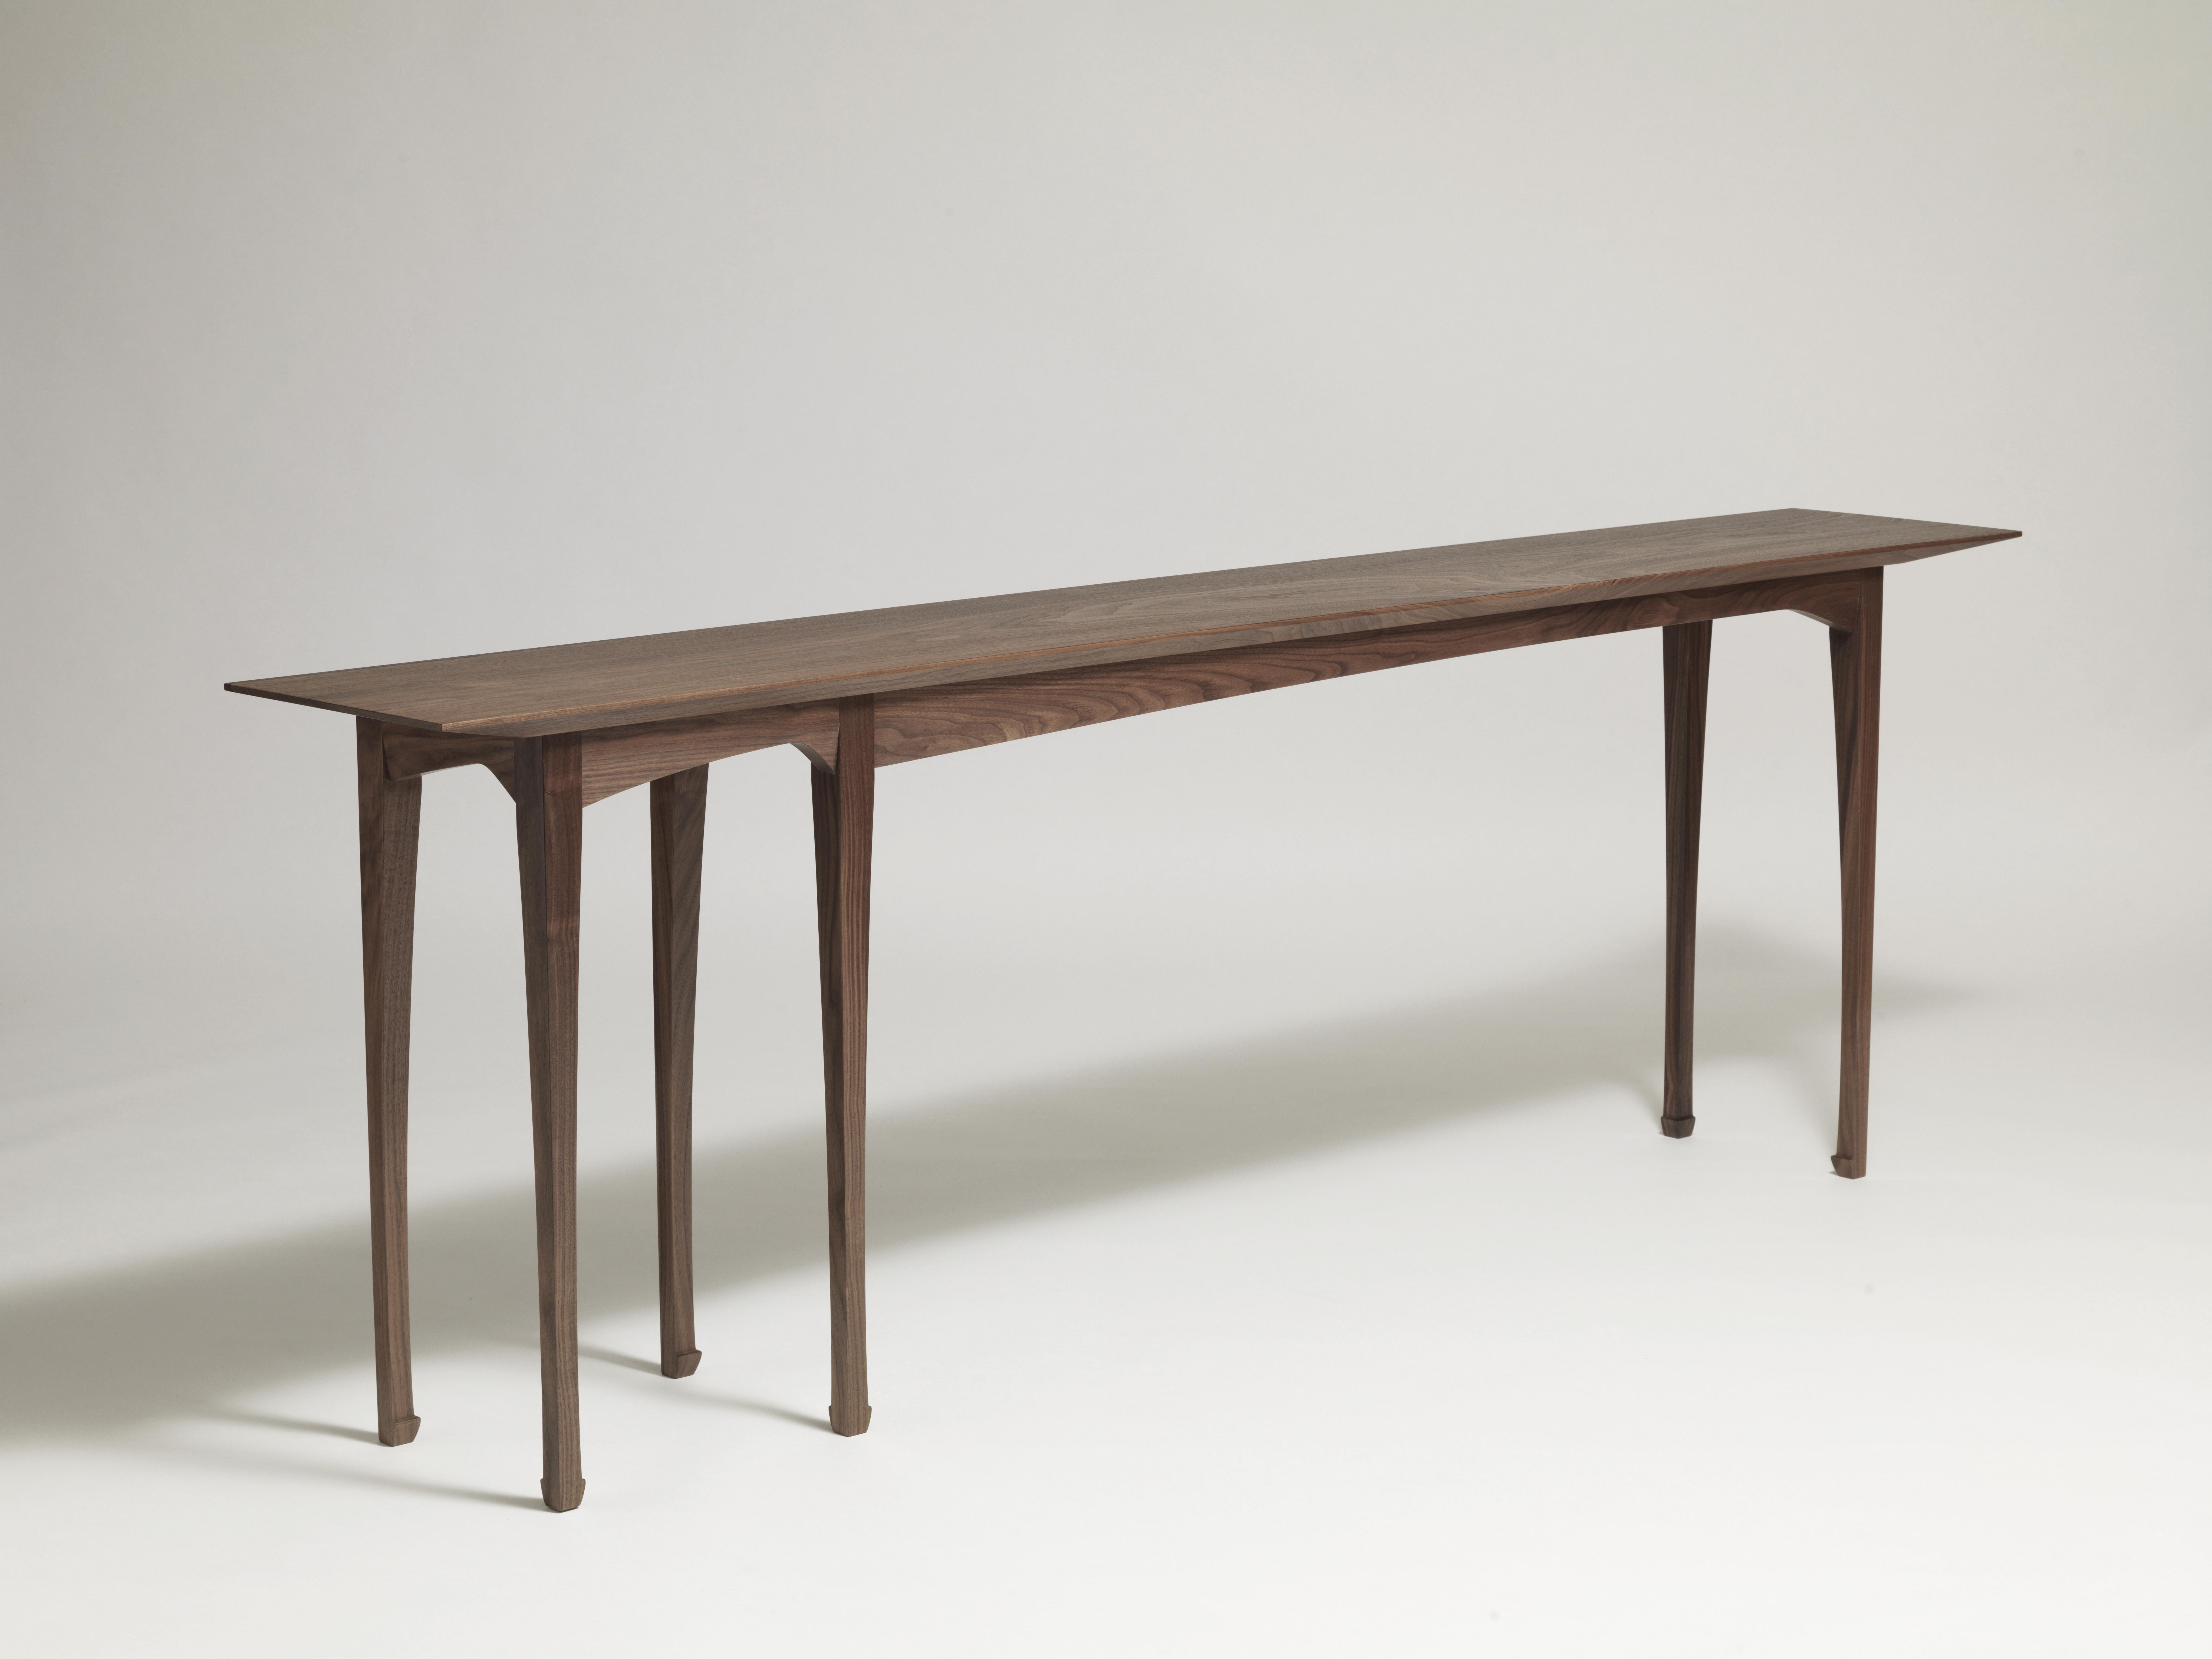 Voici la table console Liu en bois massif. L'art nouveau et le chinois se rejoignent dans une forme délicate qui donne l'impression d'être en mouvement.

Illustré en noyer massif avec une finition naturelle.